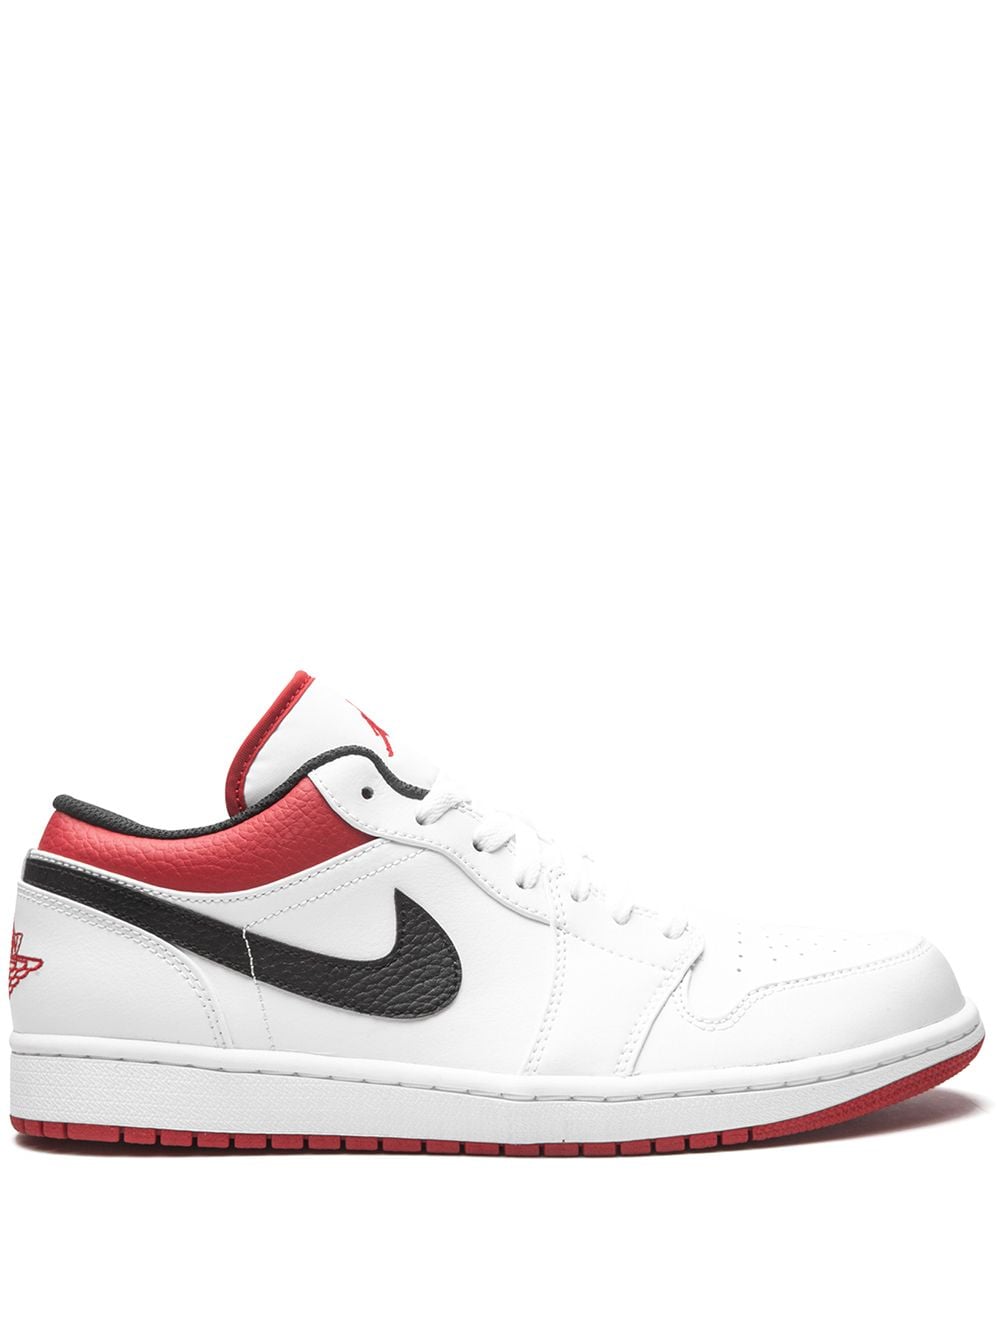 Jordan Air Jordan 1 Low "White/Gym Red" sneakers